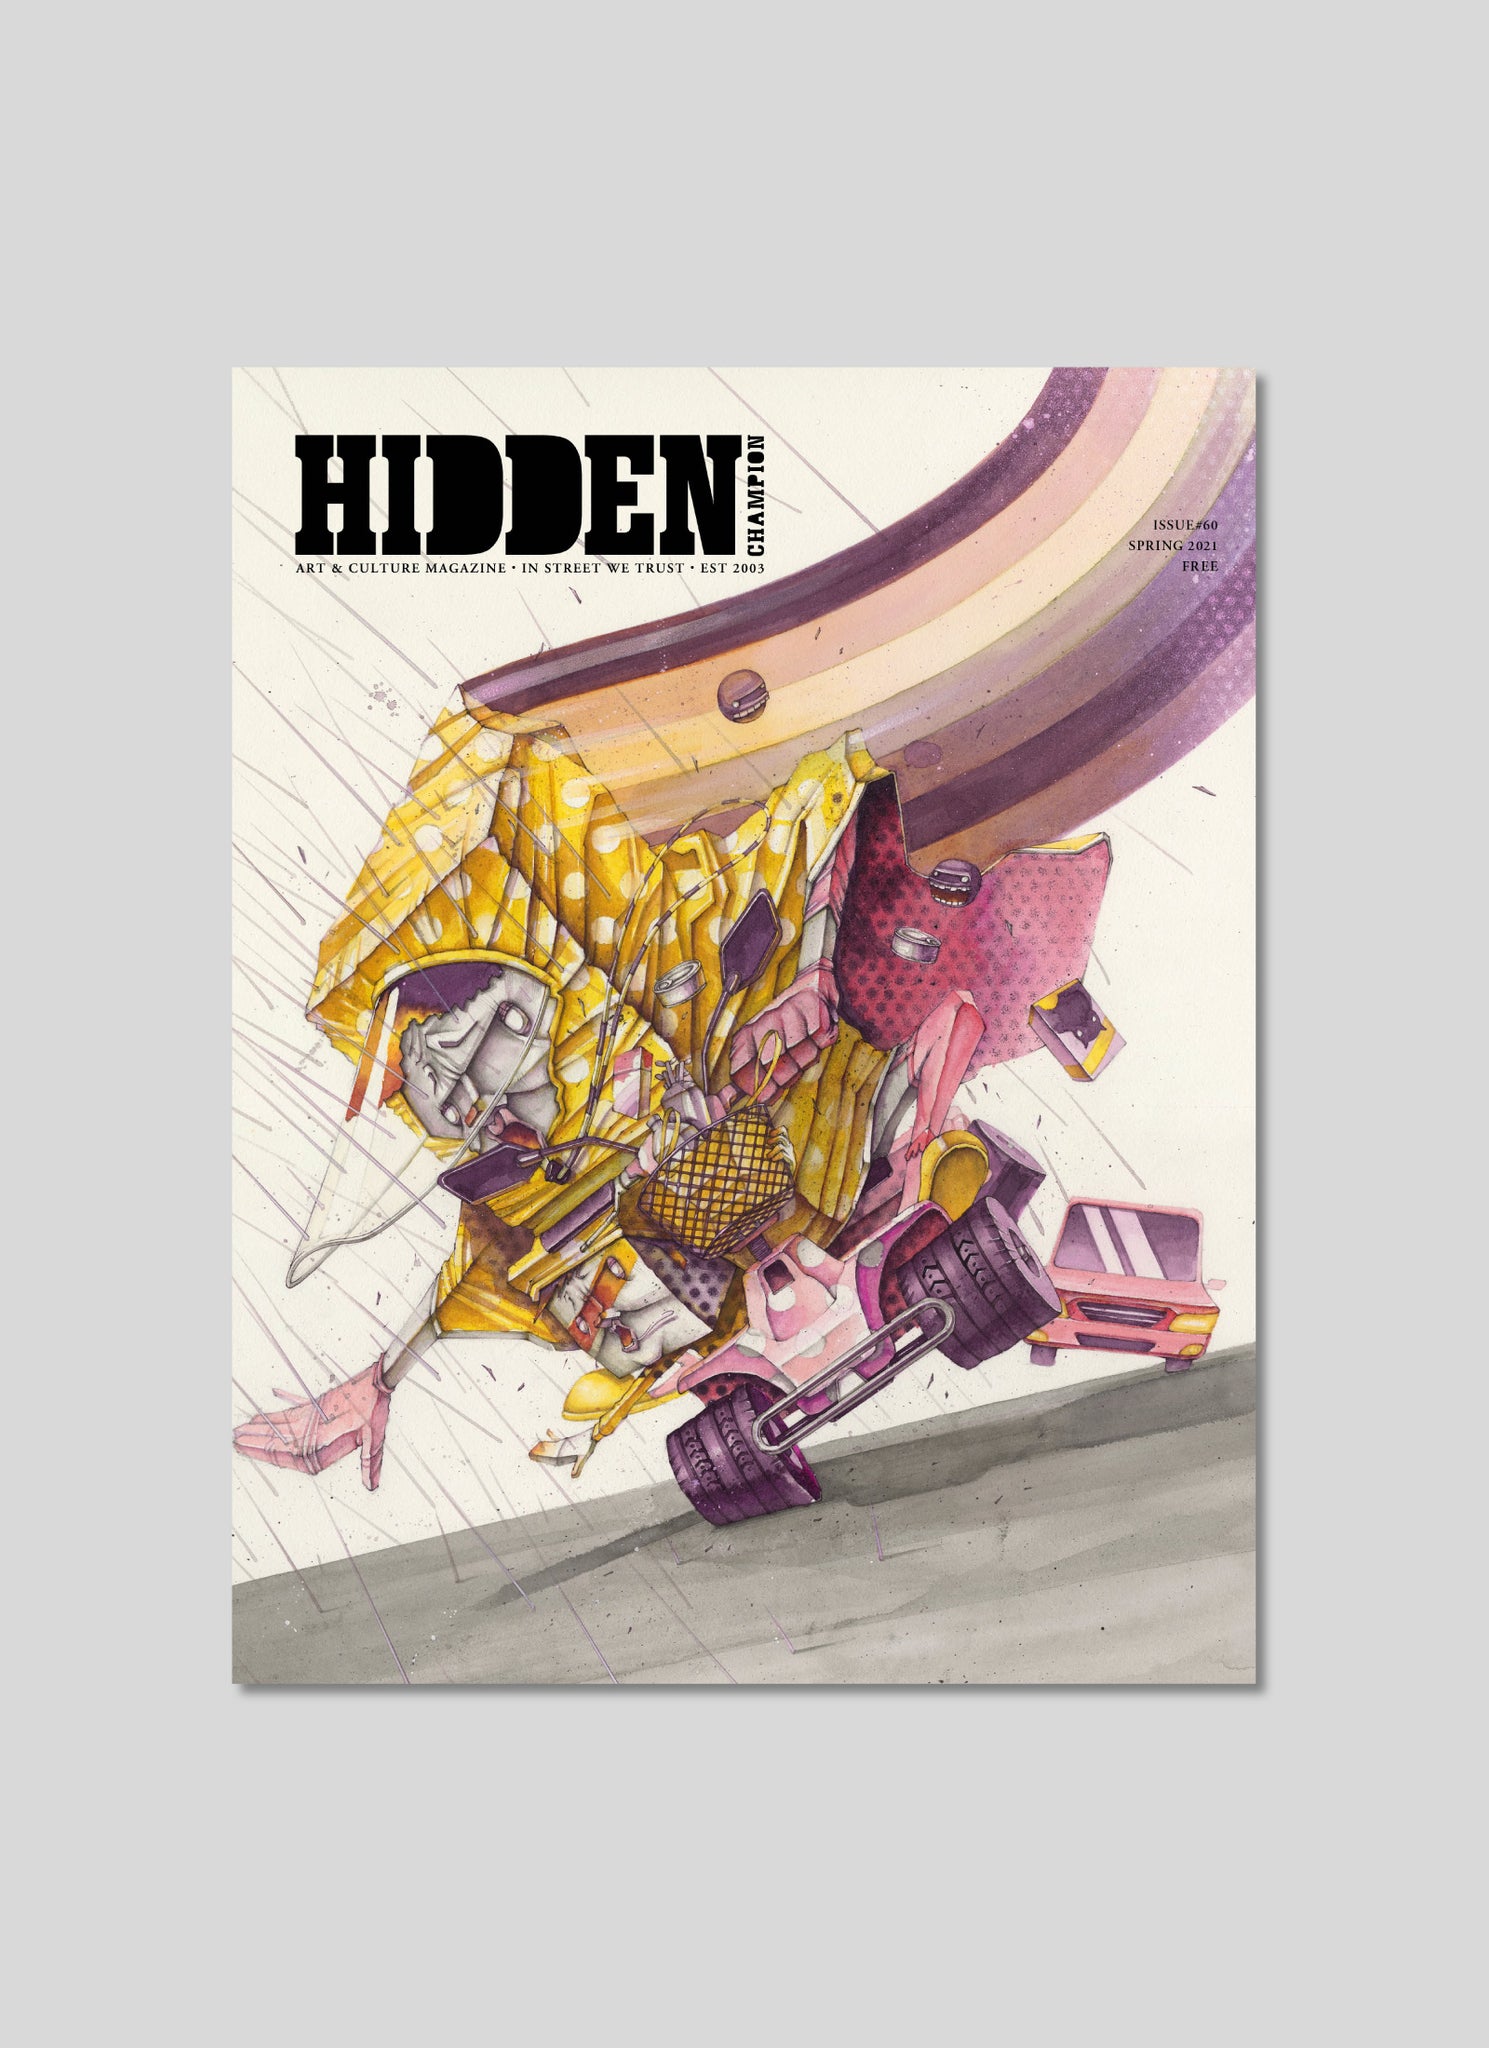 HIDDEN CHAMPION Issue #57